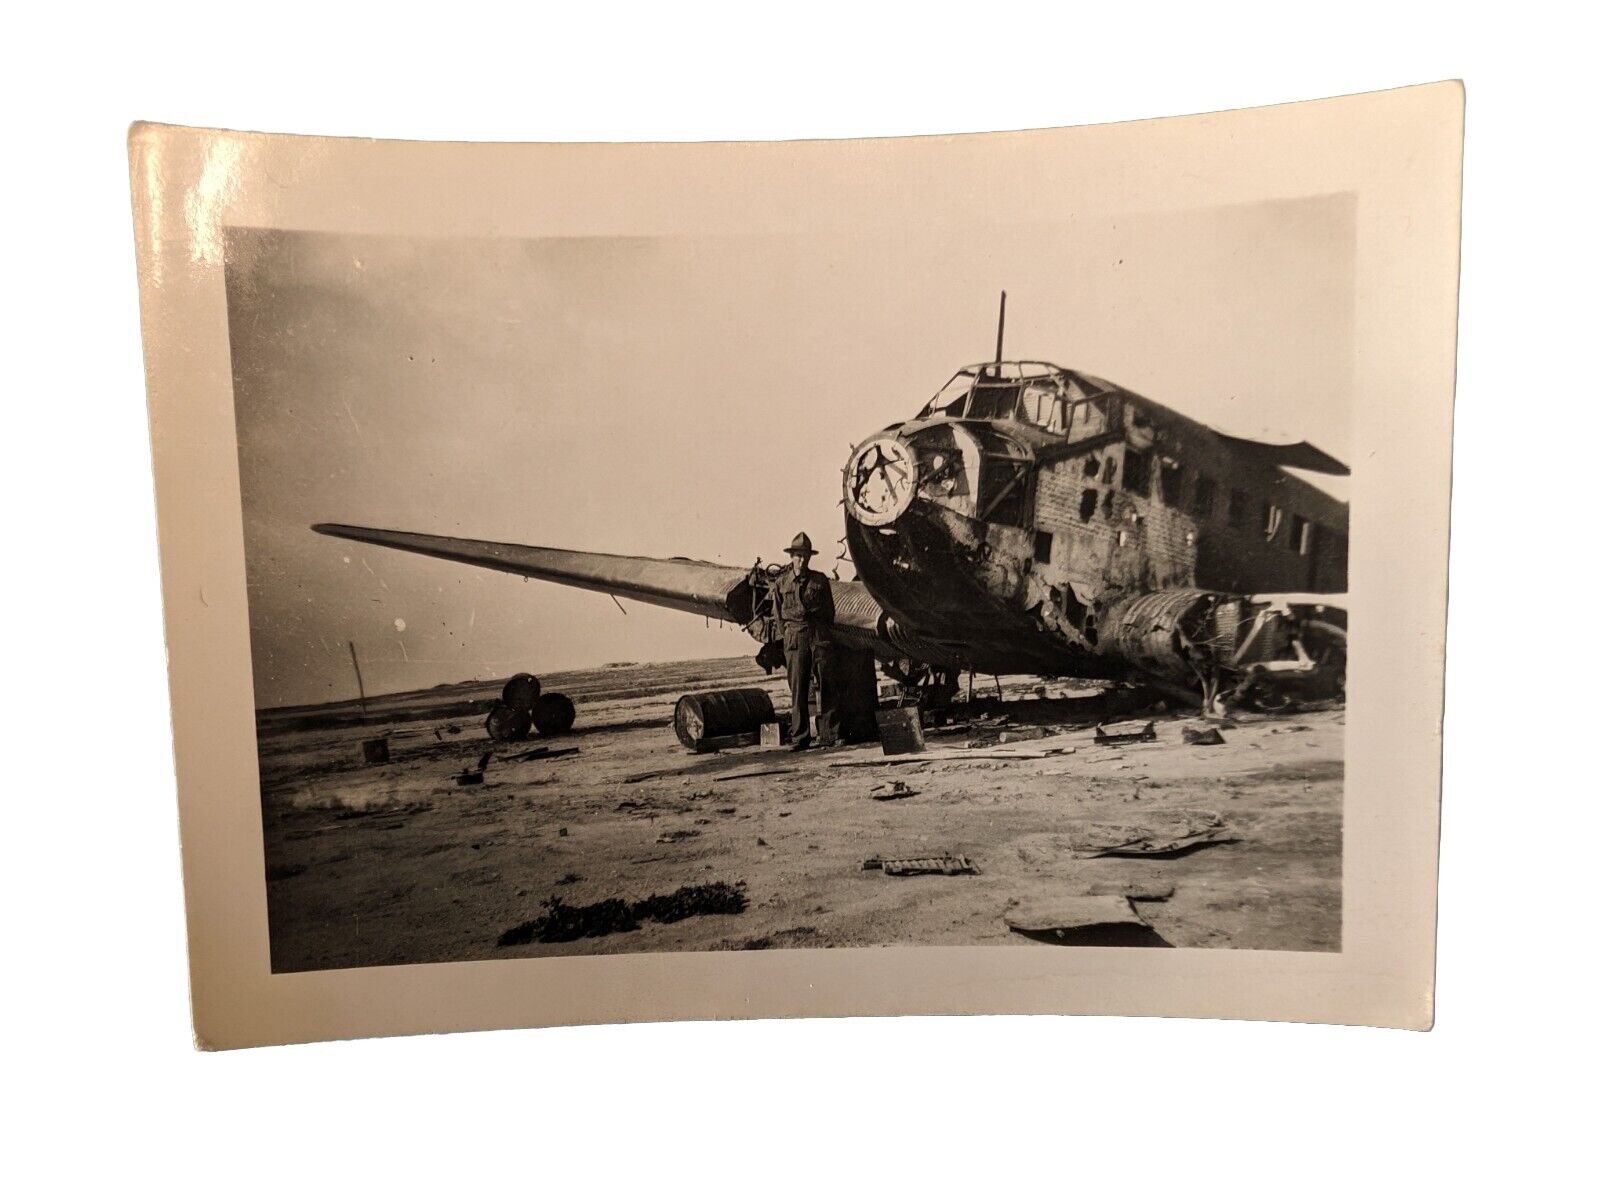  WW2 Original Photo - Wrecked German JU52 2.5x3.5